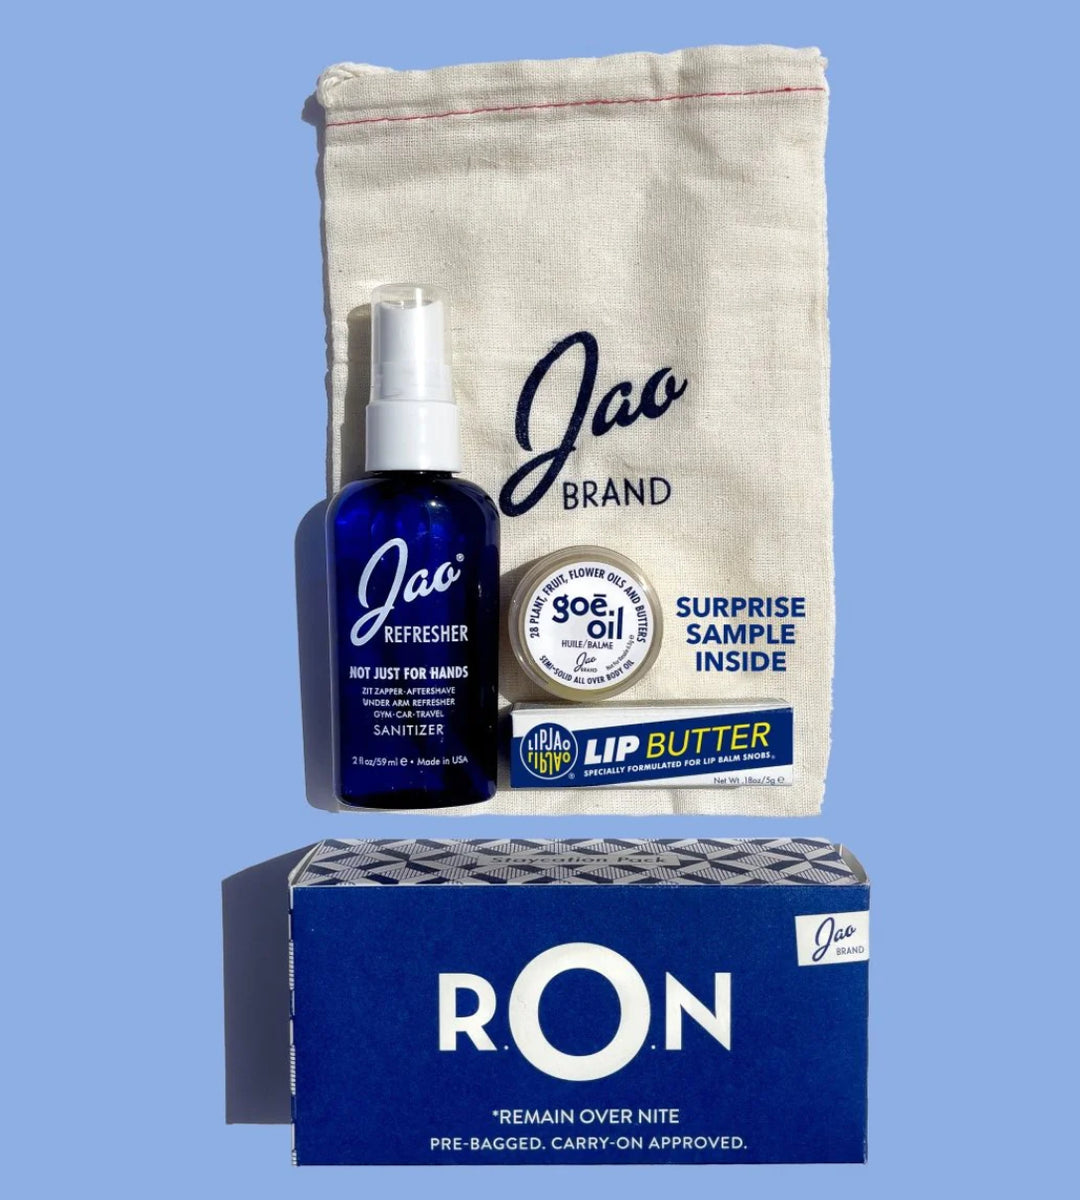 Jao Brand R.O.N. Travel Kit Lip Balm, Sanitizer, Goe Oil gift